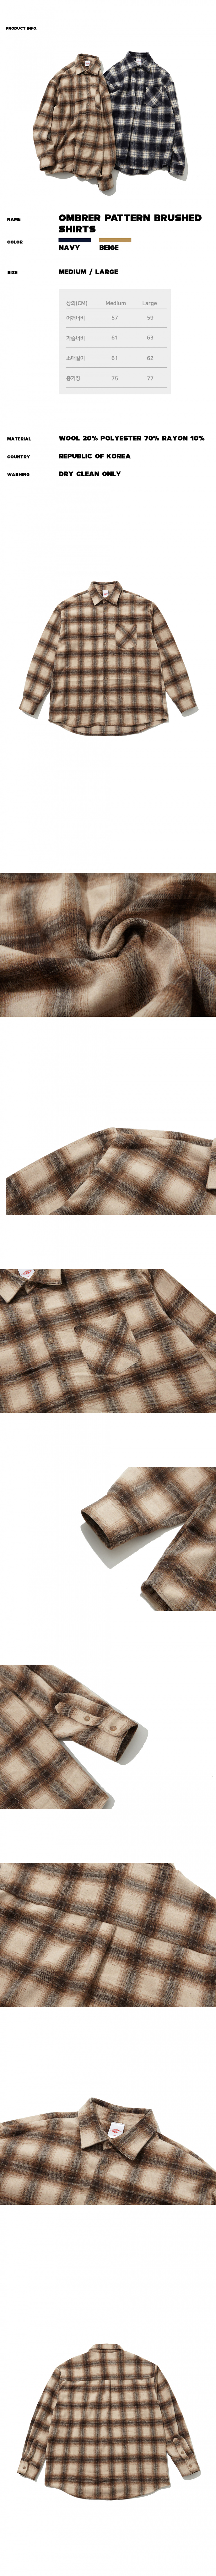 파나컬트(FANA CULT) 옴브레 패턴 브러쉬드 셔츠 - BEIGE